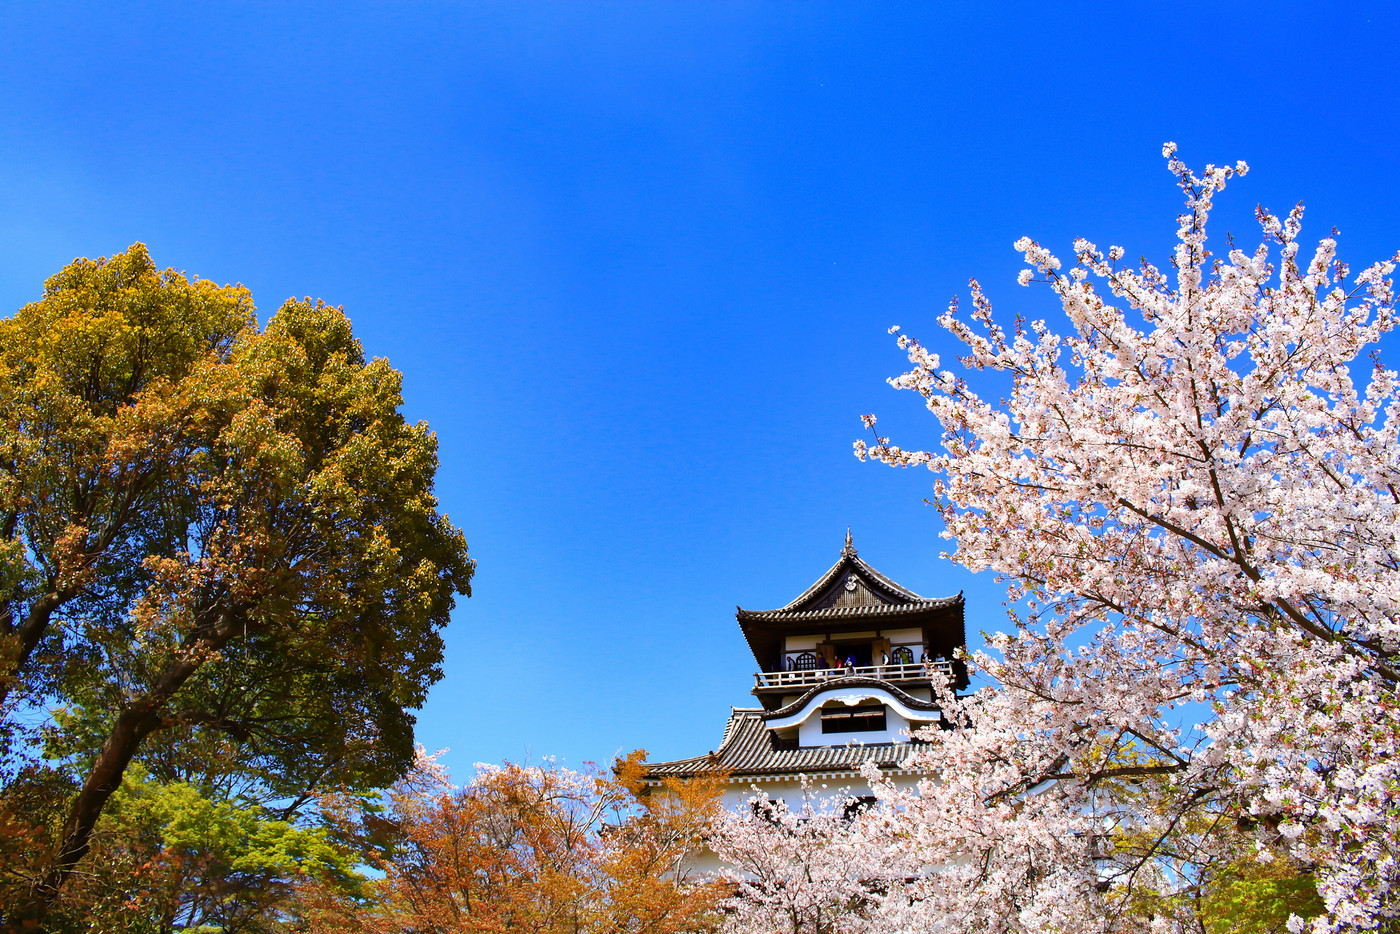 春の犬山市、犬山城と桜の風景